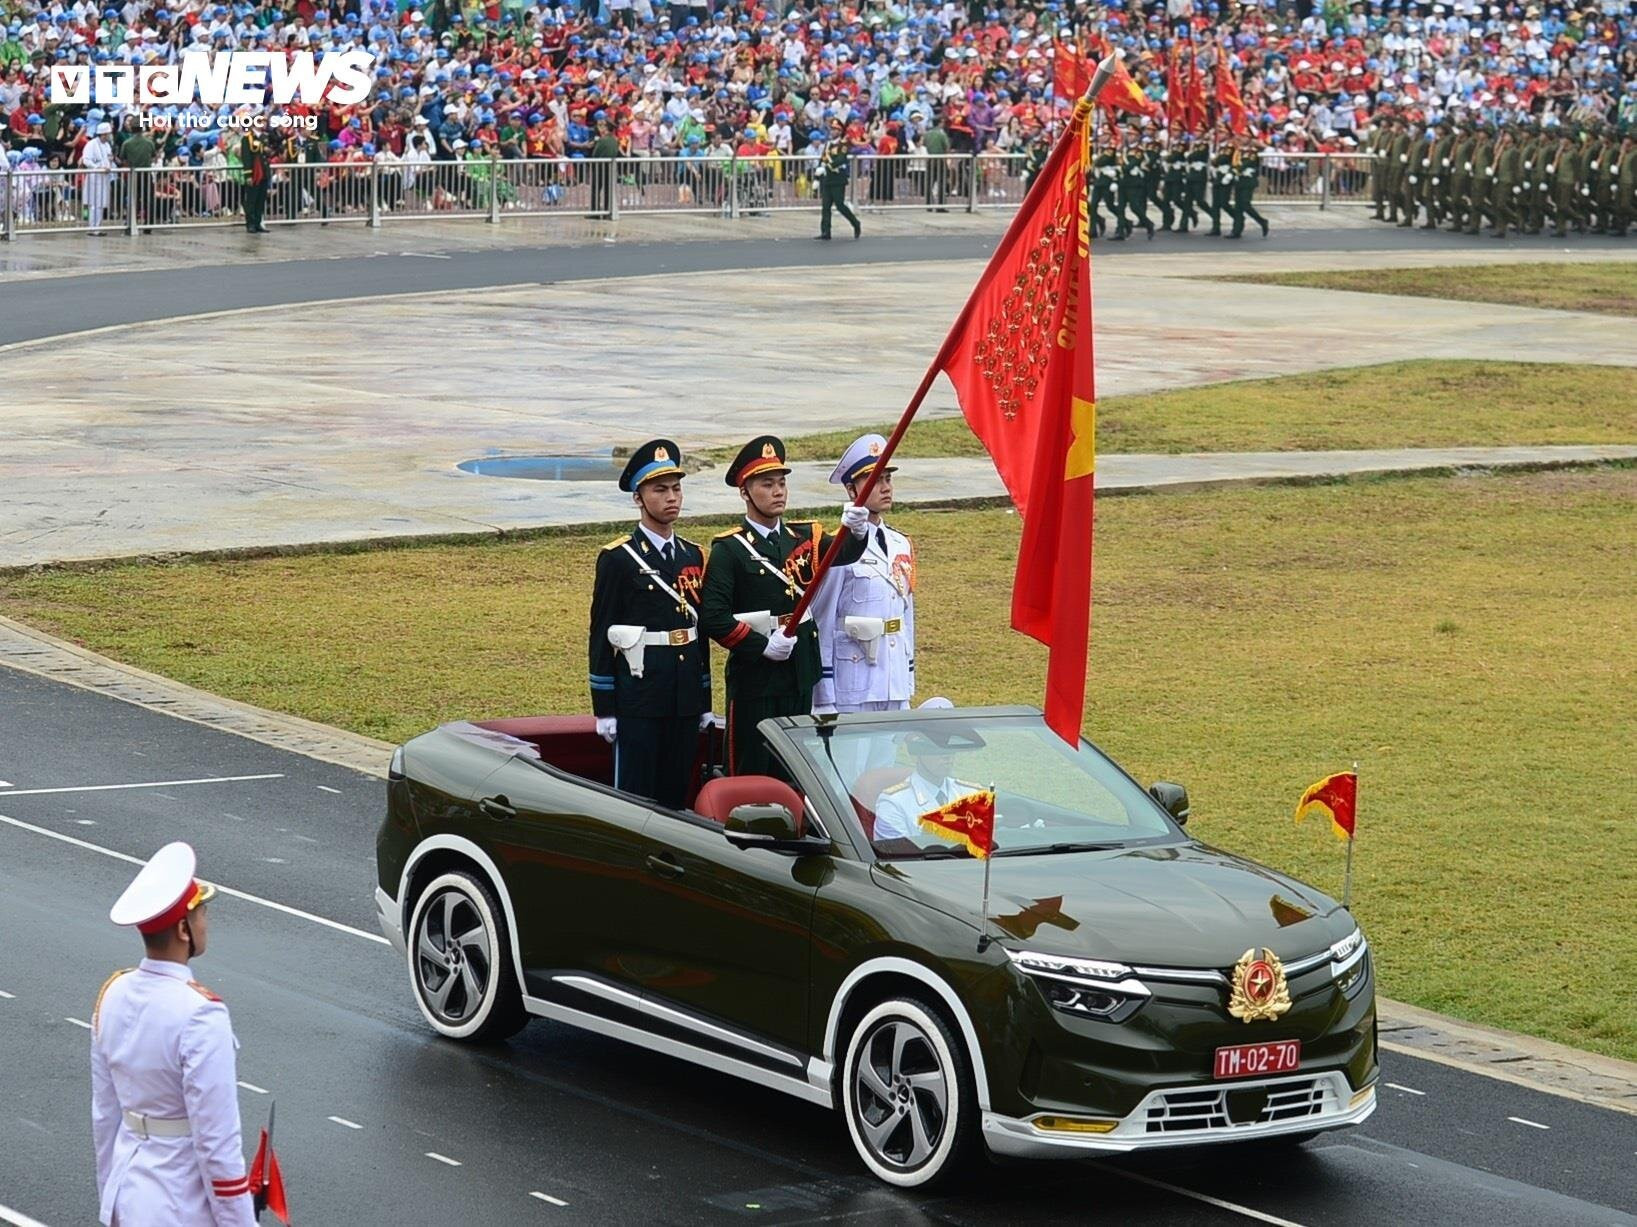 Sáng 7/5 diễn ra lễ kỷ niệm 70 năm chiến thắng Điện Biên Phủ (7/5/1954 - 7/5/2024) tại sân vận động tỉnh Điện Biên. Mẫu ô tô mui trần dẫn đầu đoàn diễu hành khối các lực lượng vũ trang. (Ảnh: Đắc Huy)